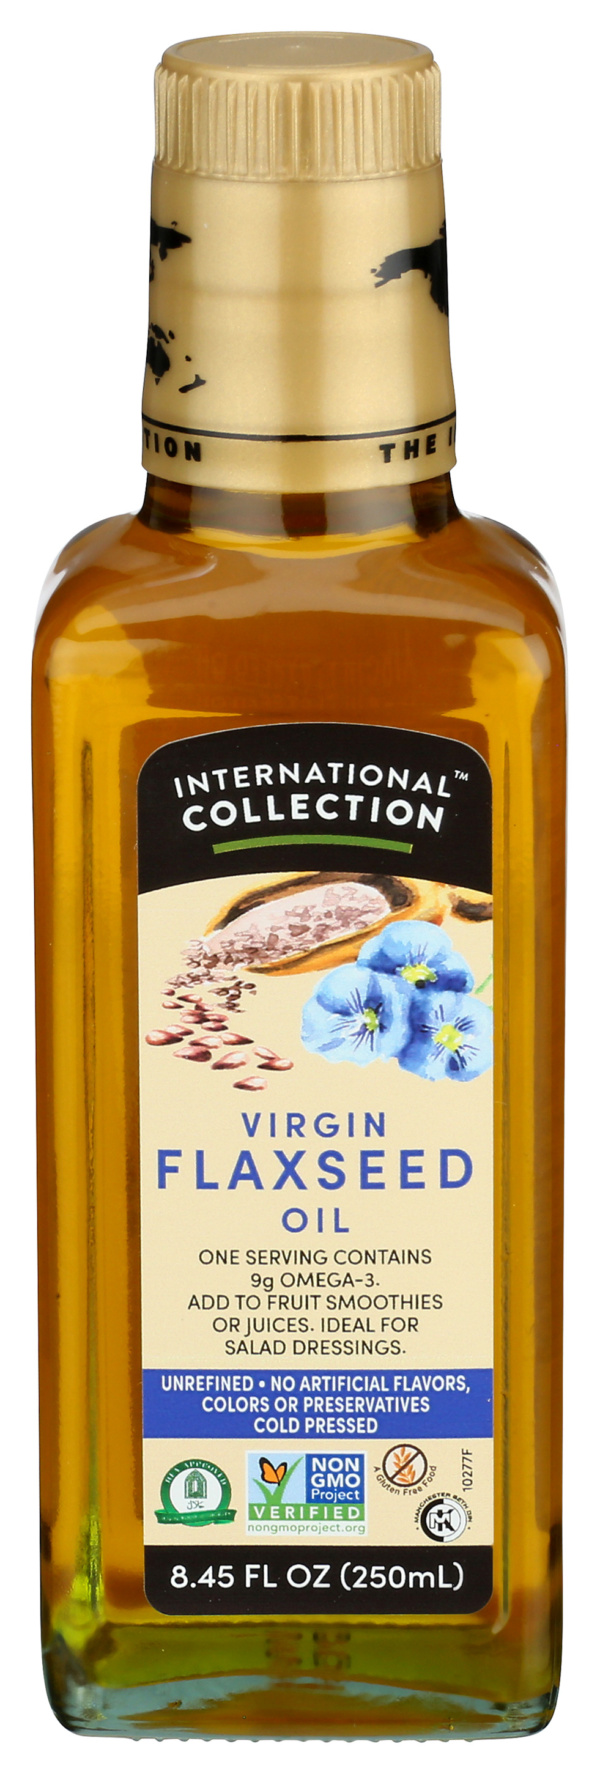 Virgin Flaxseed Oil